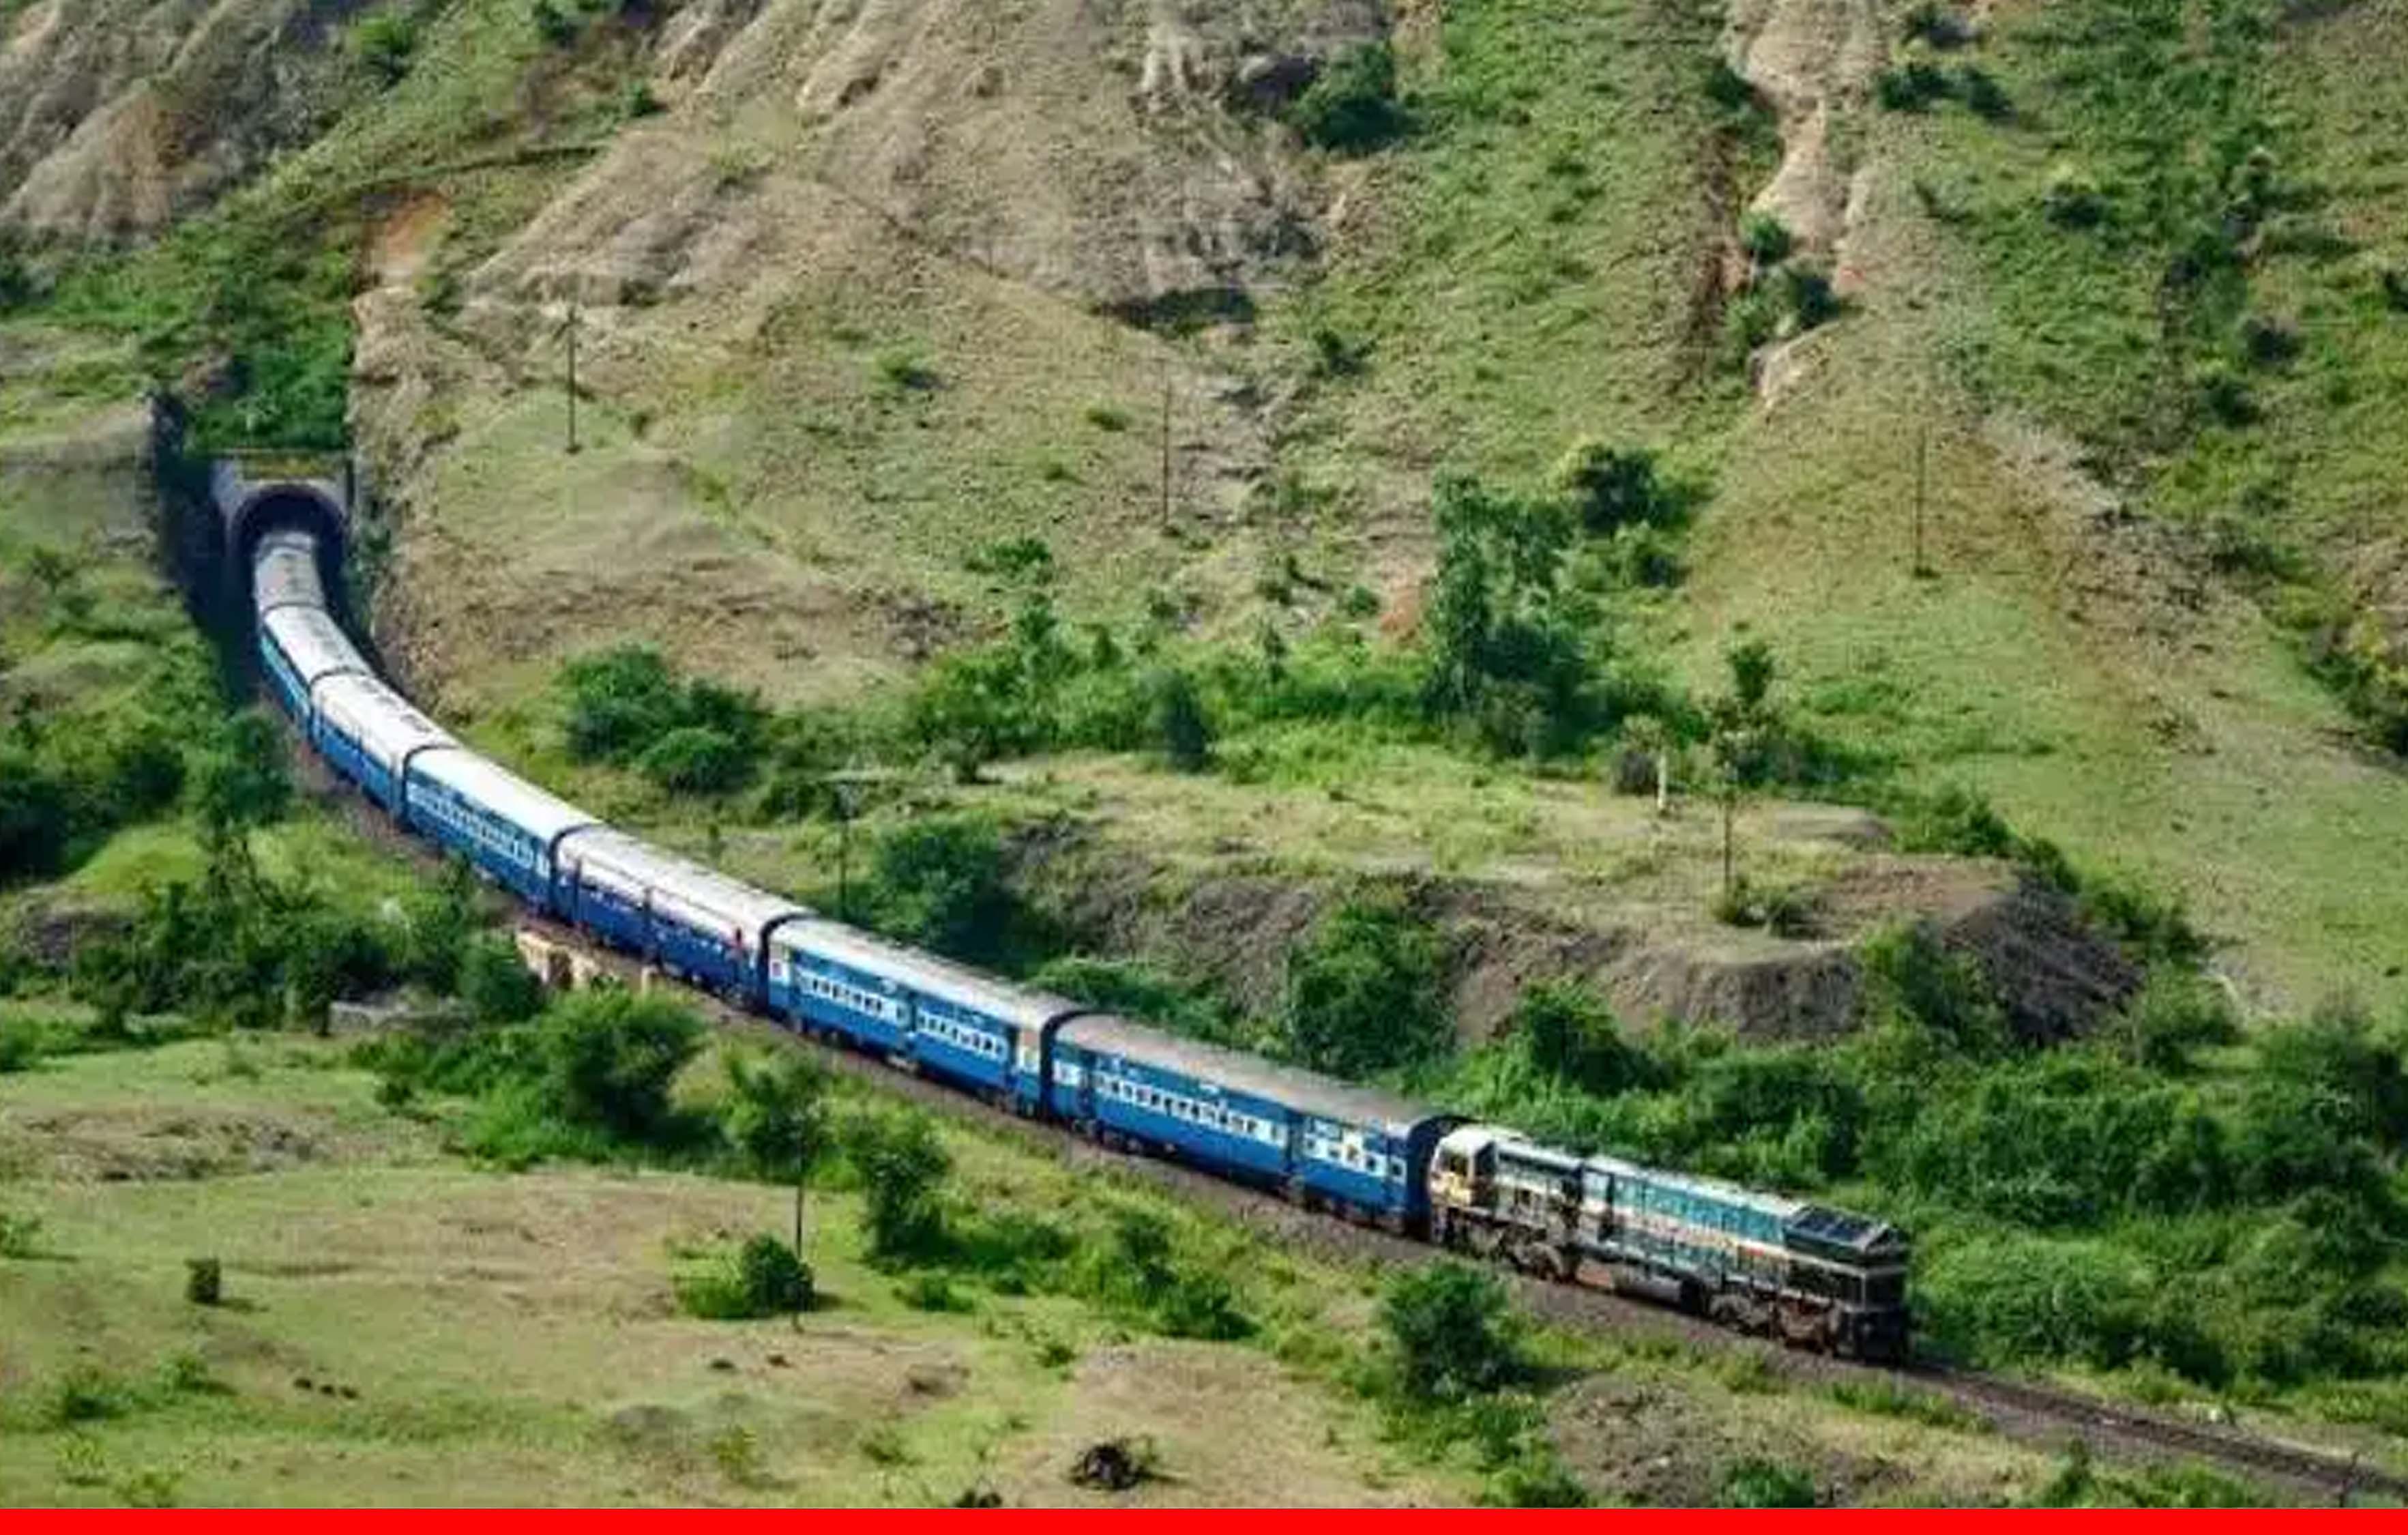 भारतीय रेल जल्द बनेगी विश्व की पहली ग्रीन रेलवे, जानिए क्या क्या बदलेगा